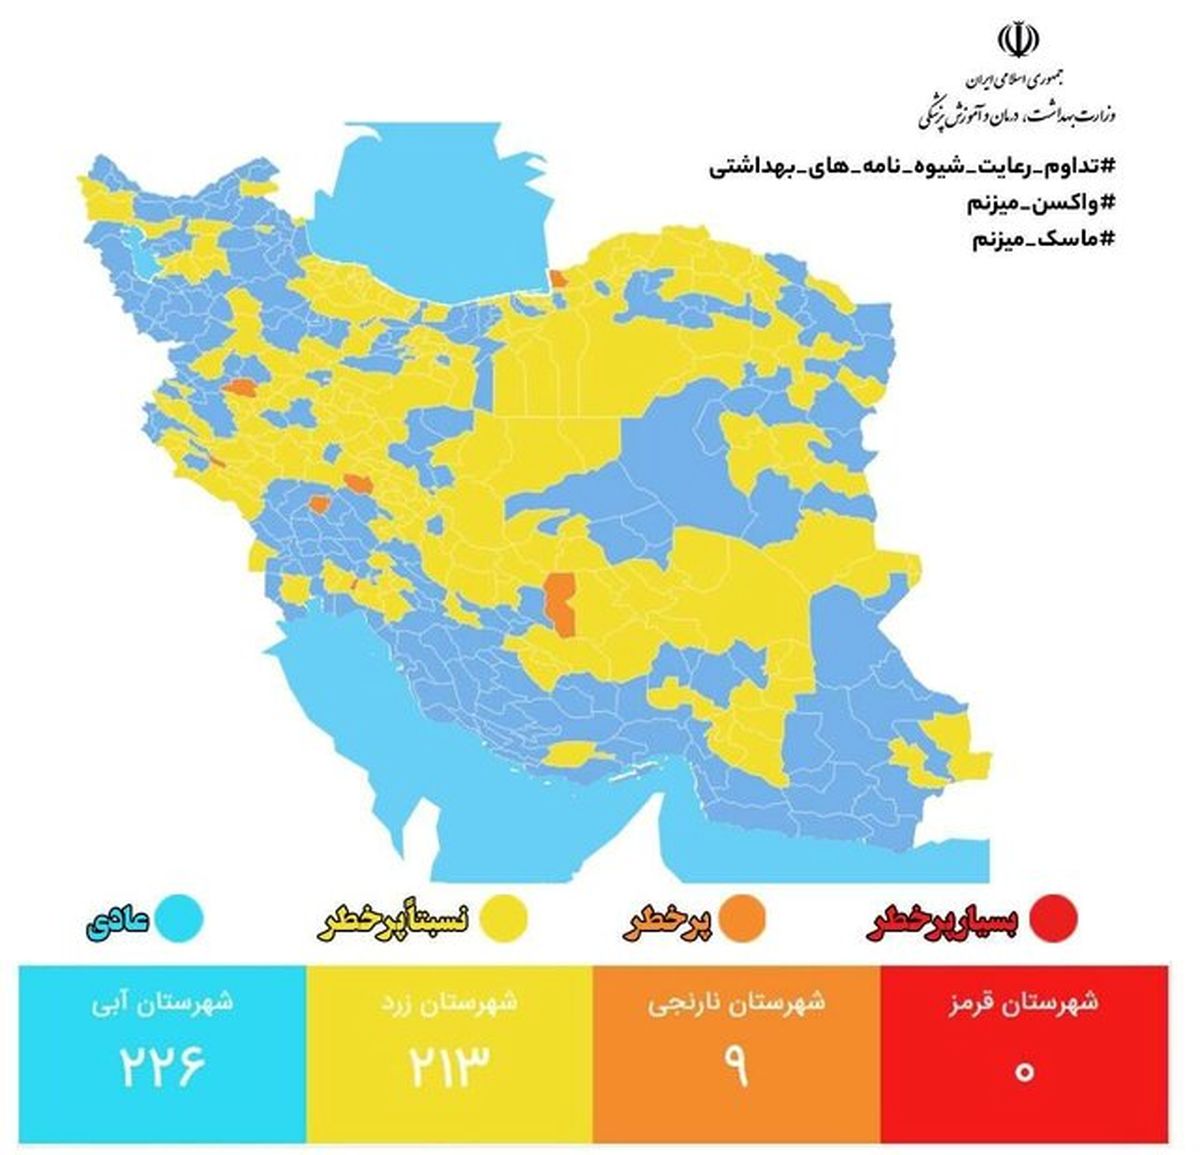 آخرین وضعیت کرونا در ایران؛ ۹۸ درصد شهرها در وضعیت زرد و آبی